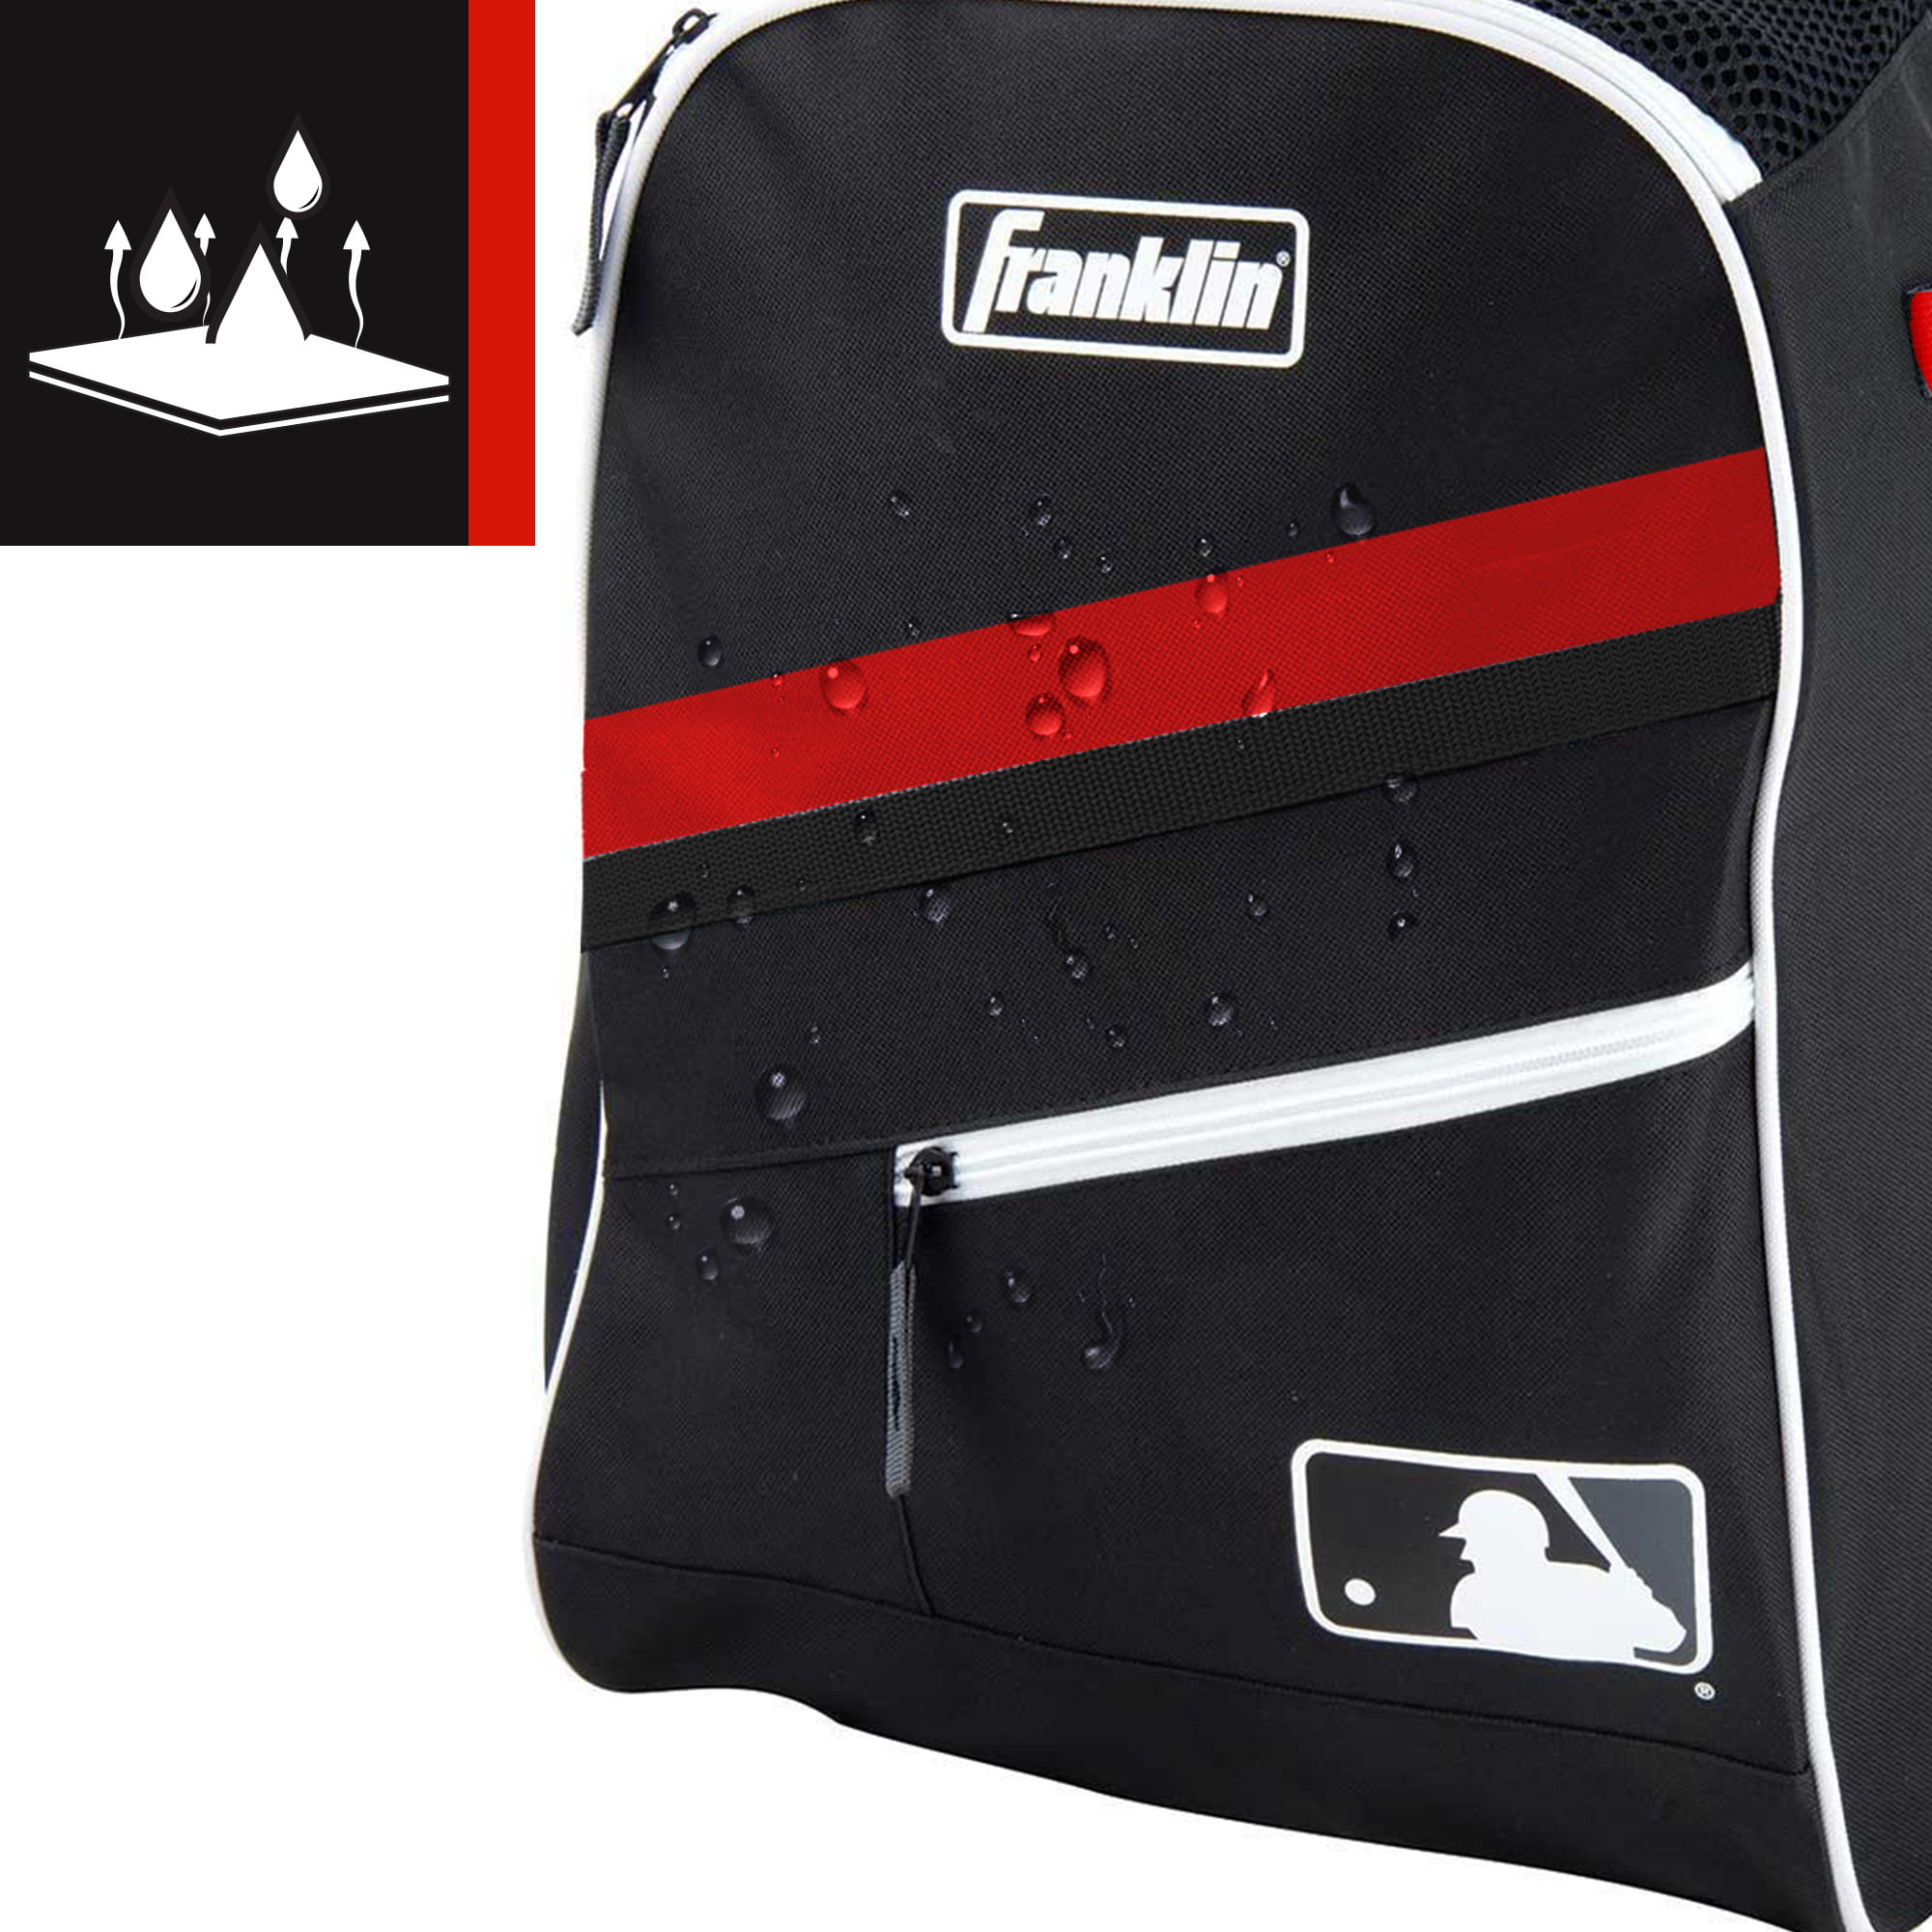 SSK Travel Bat Pack Backpack Baseball / Softball Black